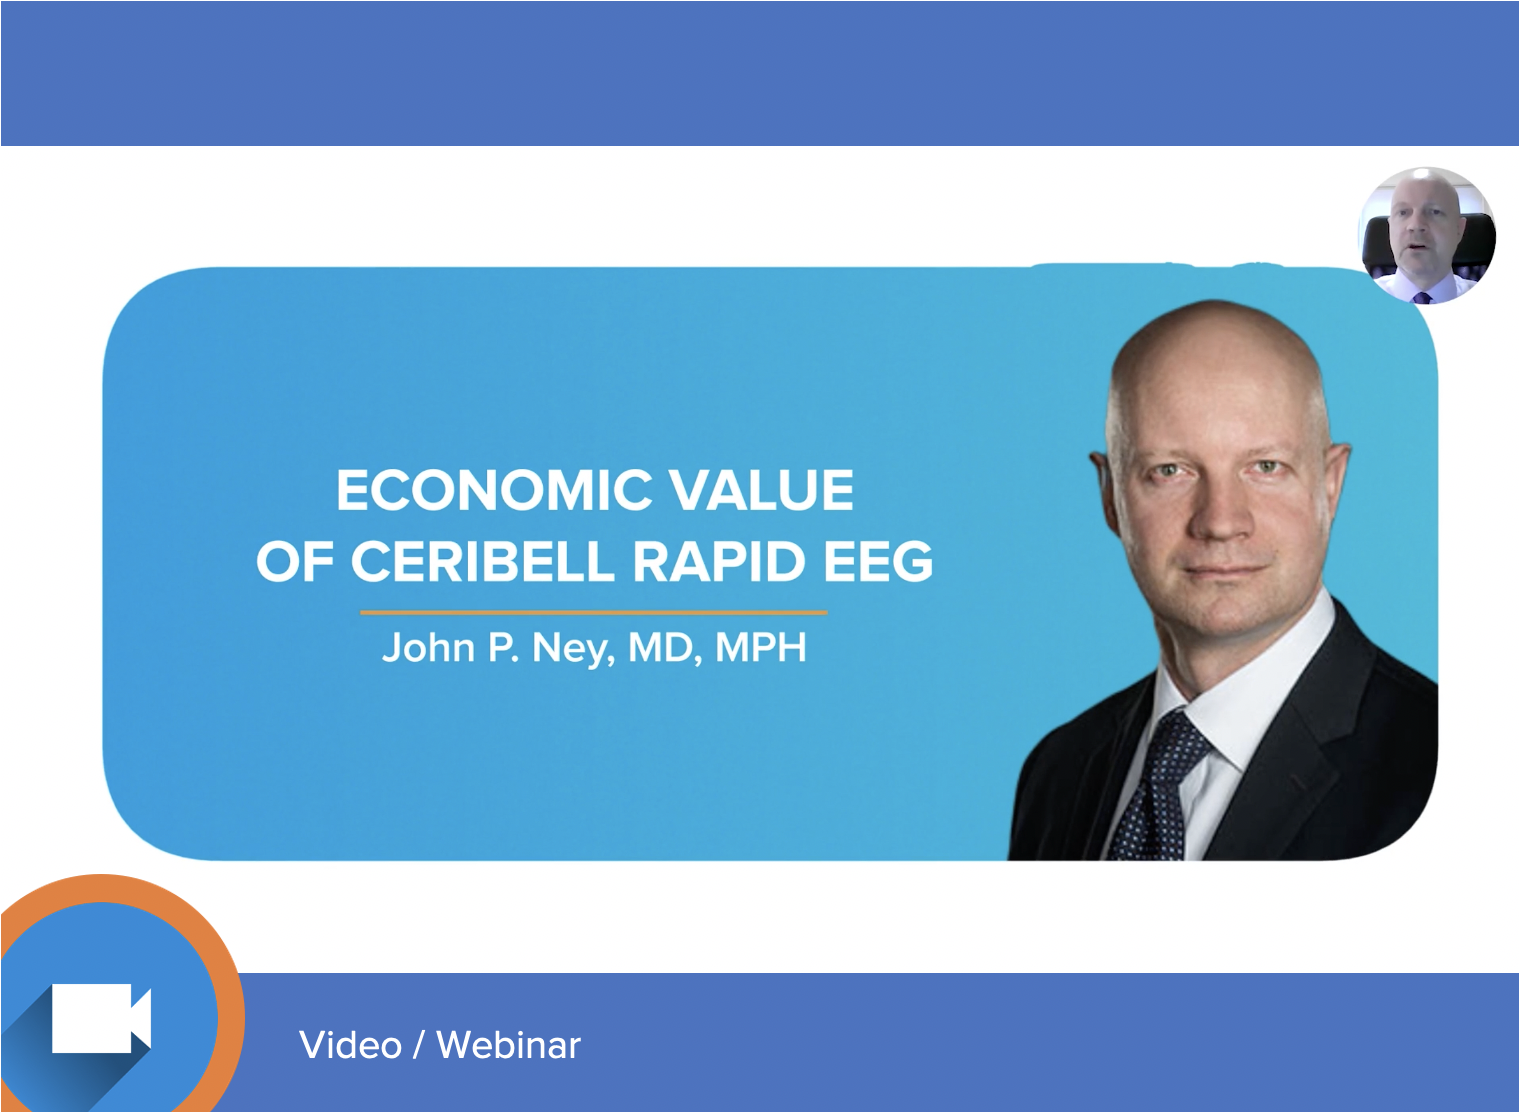 Economic Value of Ceribell EEG